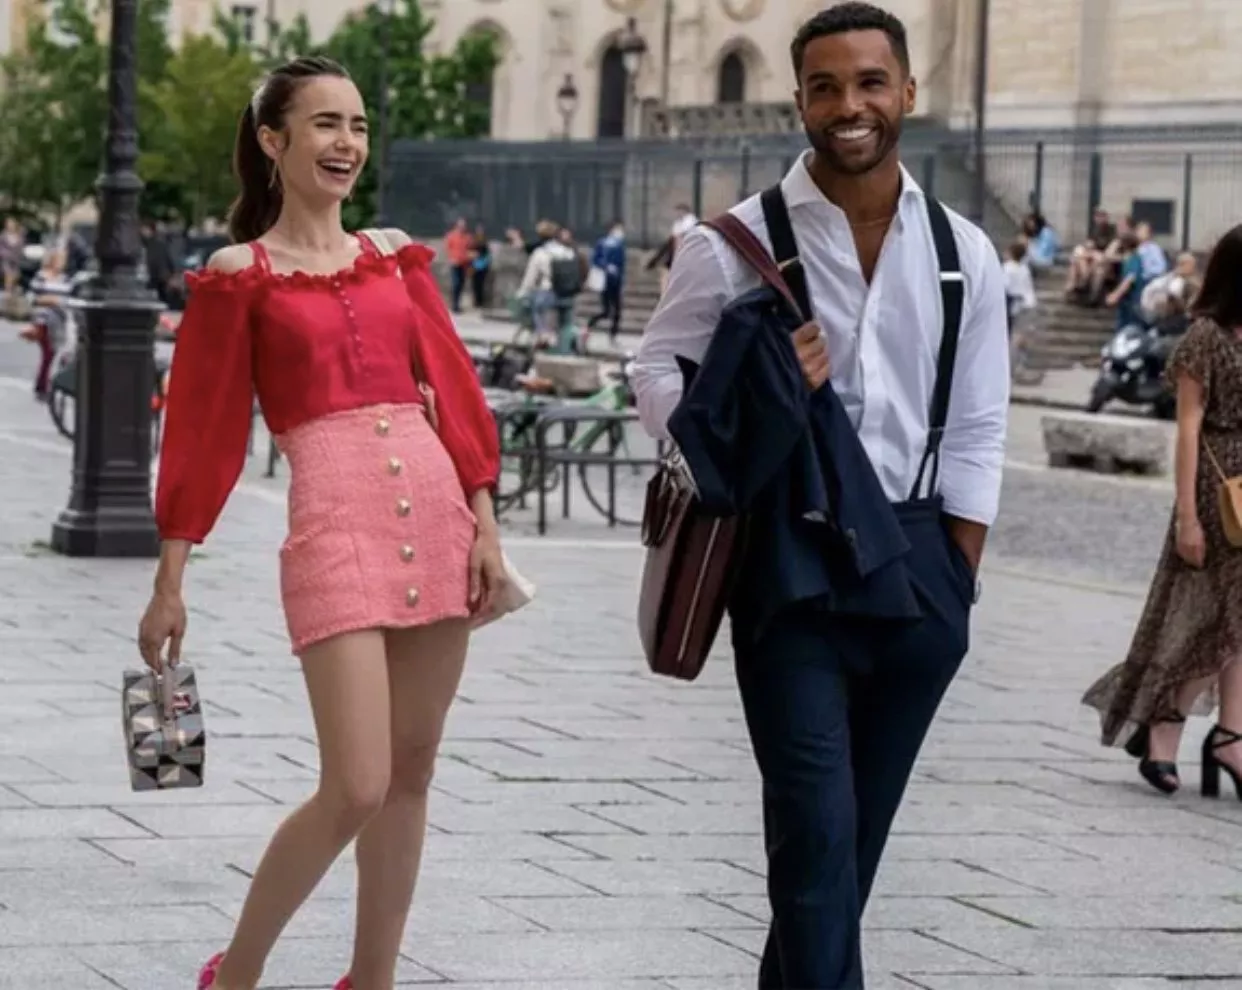 Oui، الجزء الثاني من مسلسل Emily In Paris يستحق المشاهدة! هذه هي أبرز تفاصيله